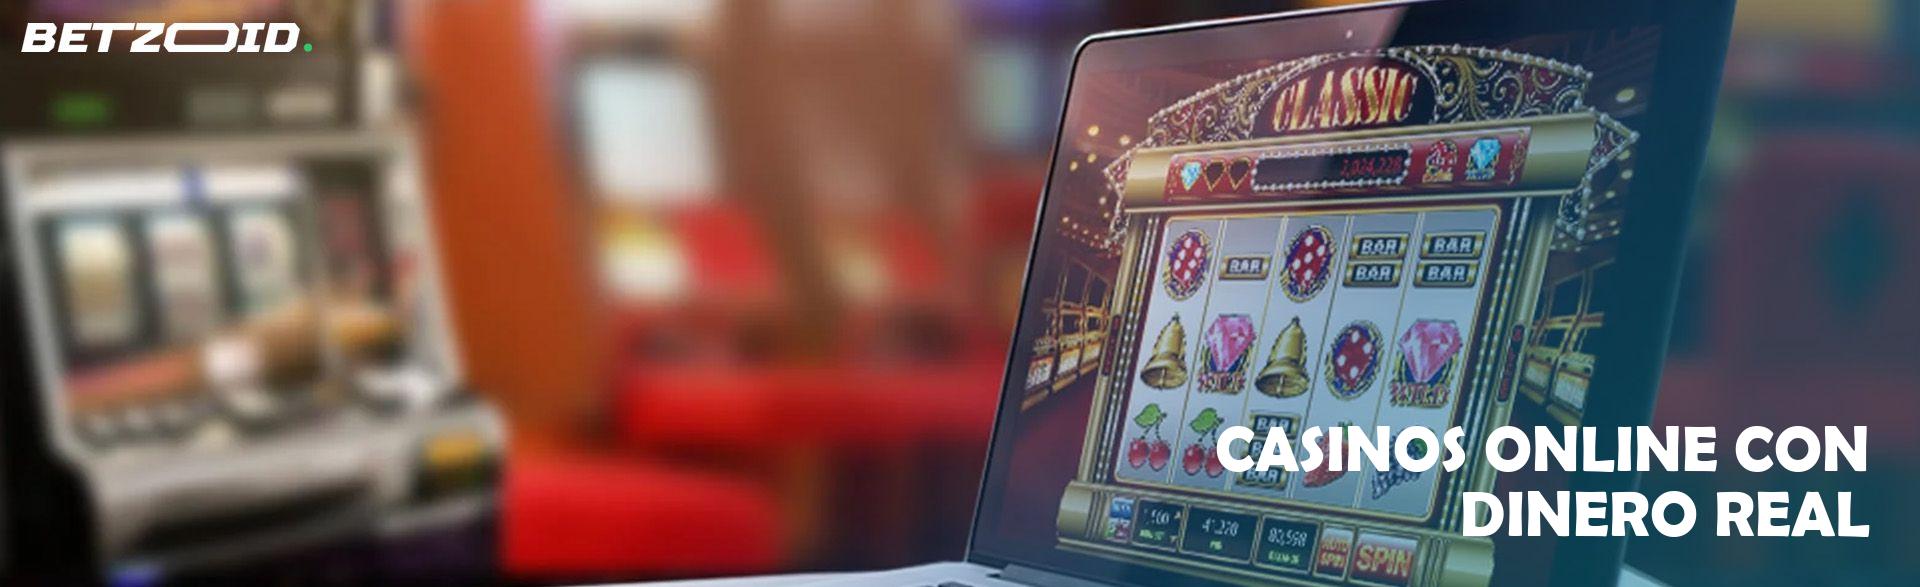 Casinos Online con Dinero Real.